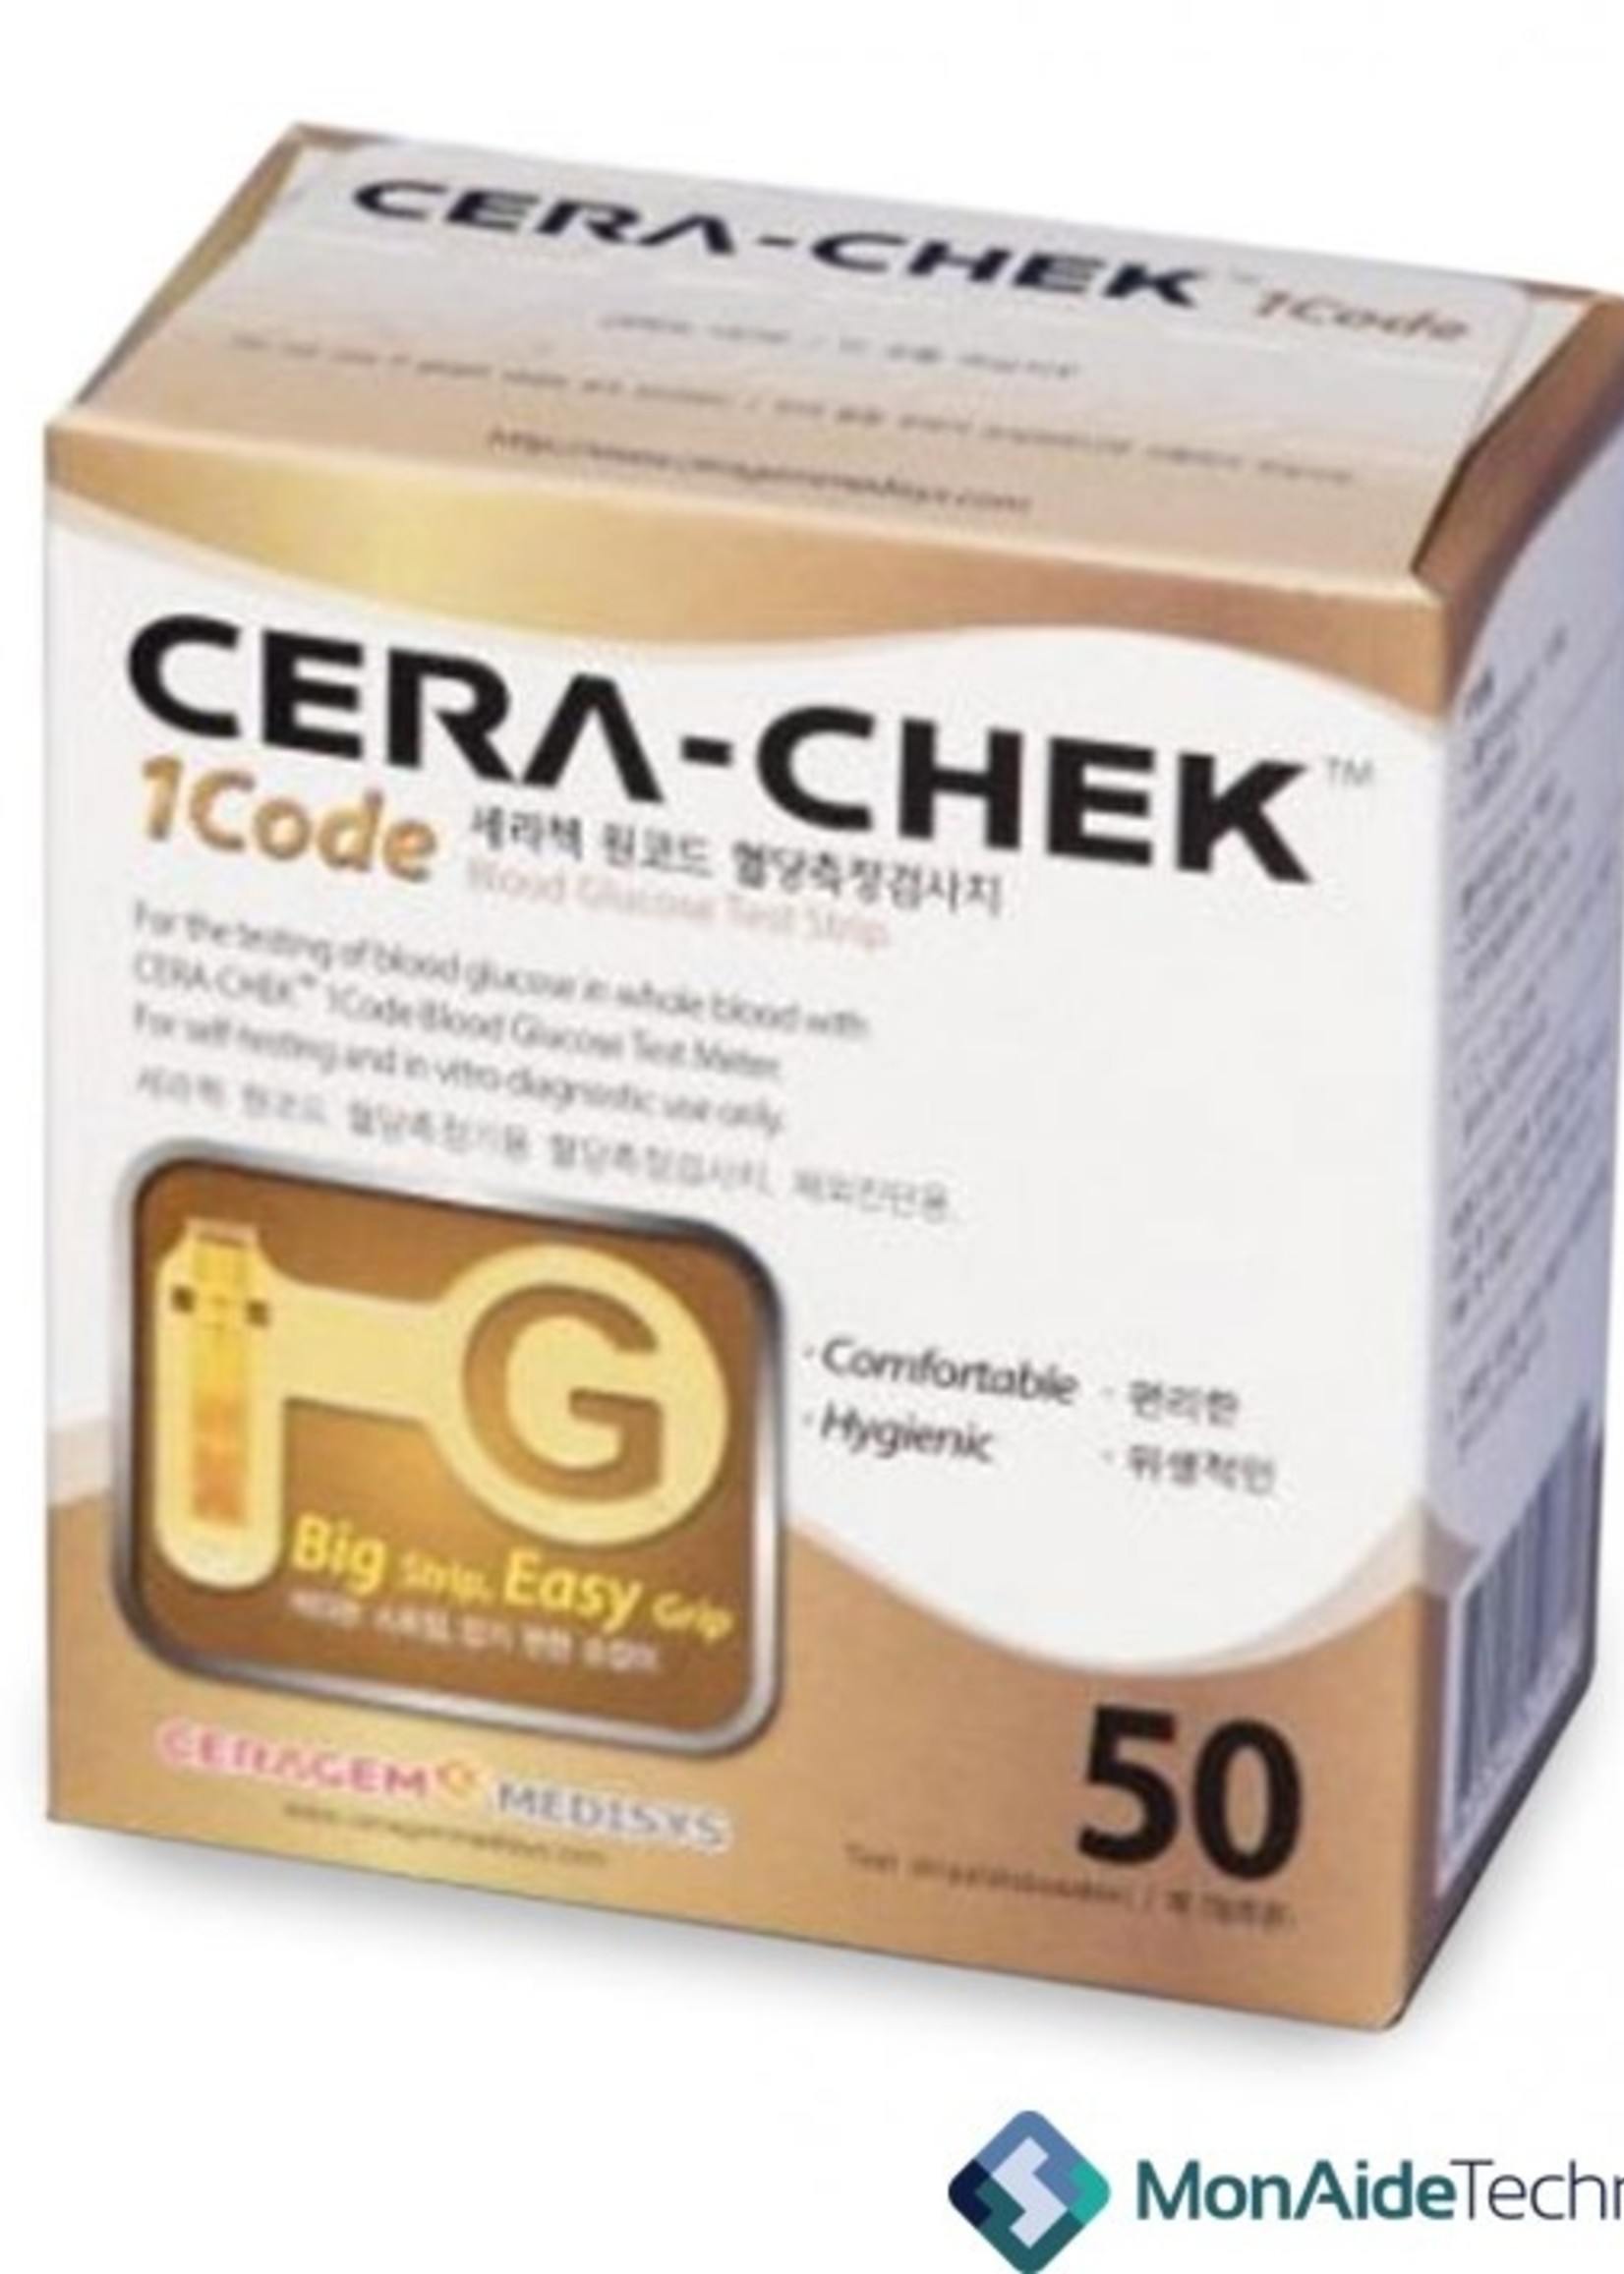 Bandelettes de test de glycémie Bg - Cera Check